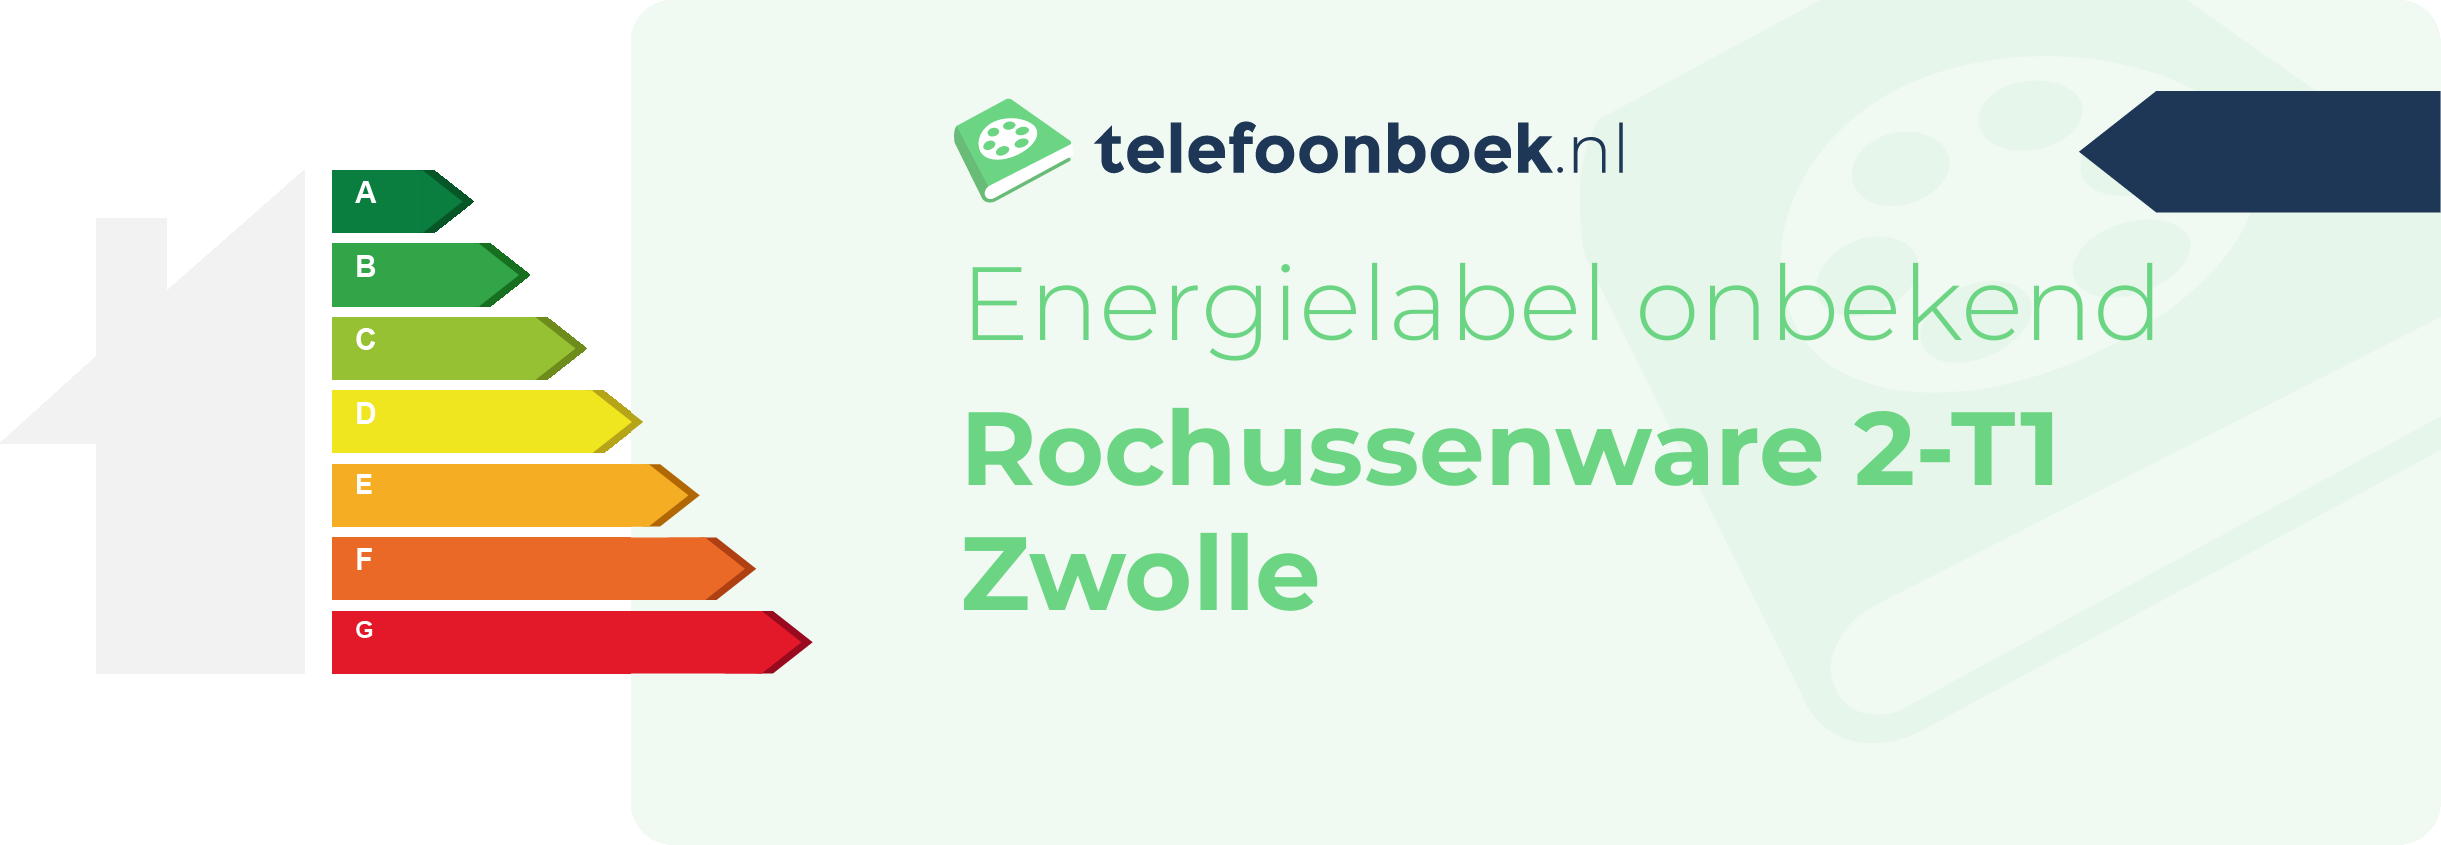 Energielabel Rochussenware 2-T1 Zwolle